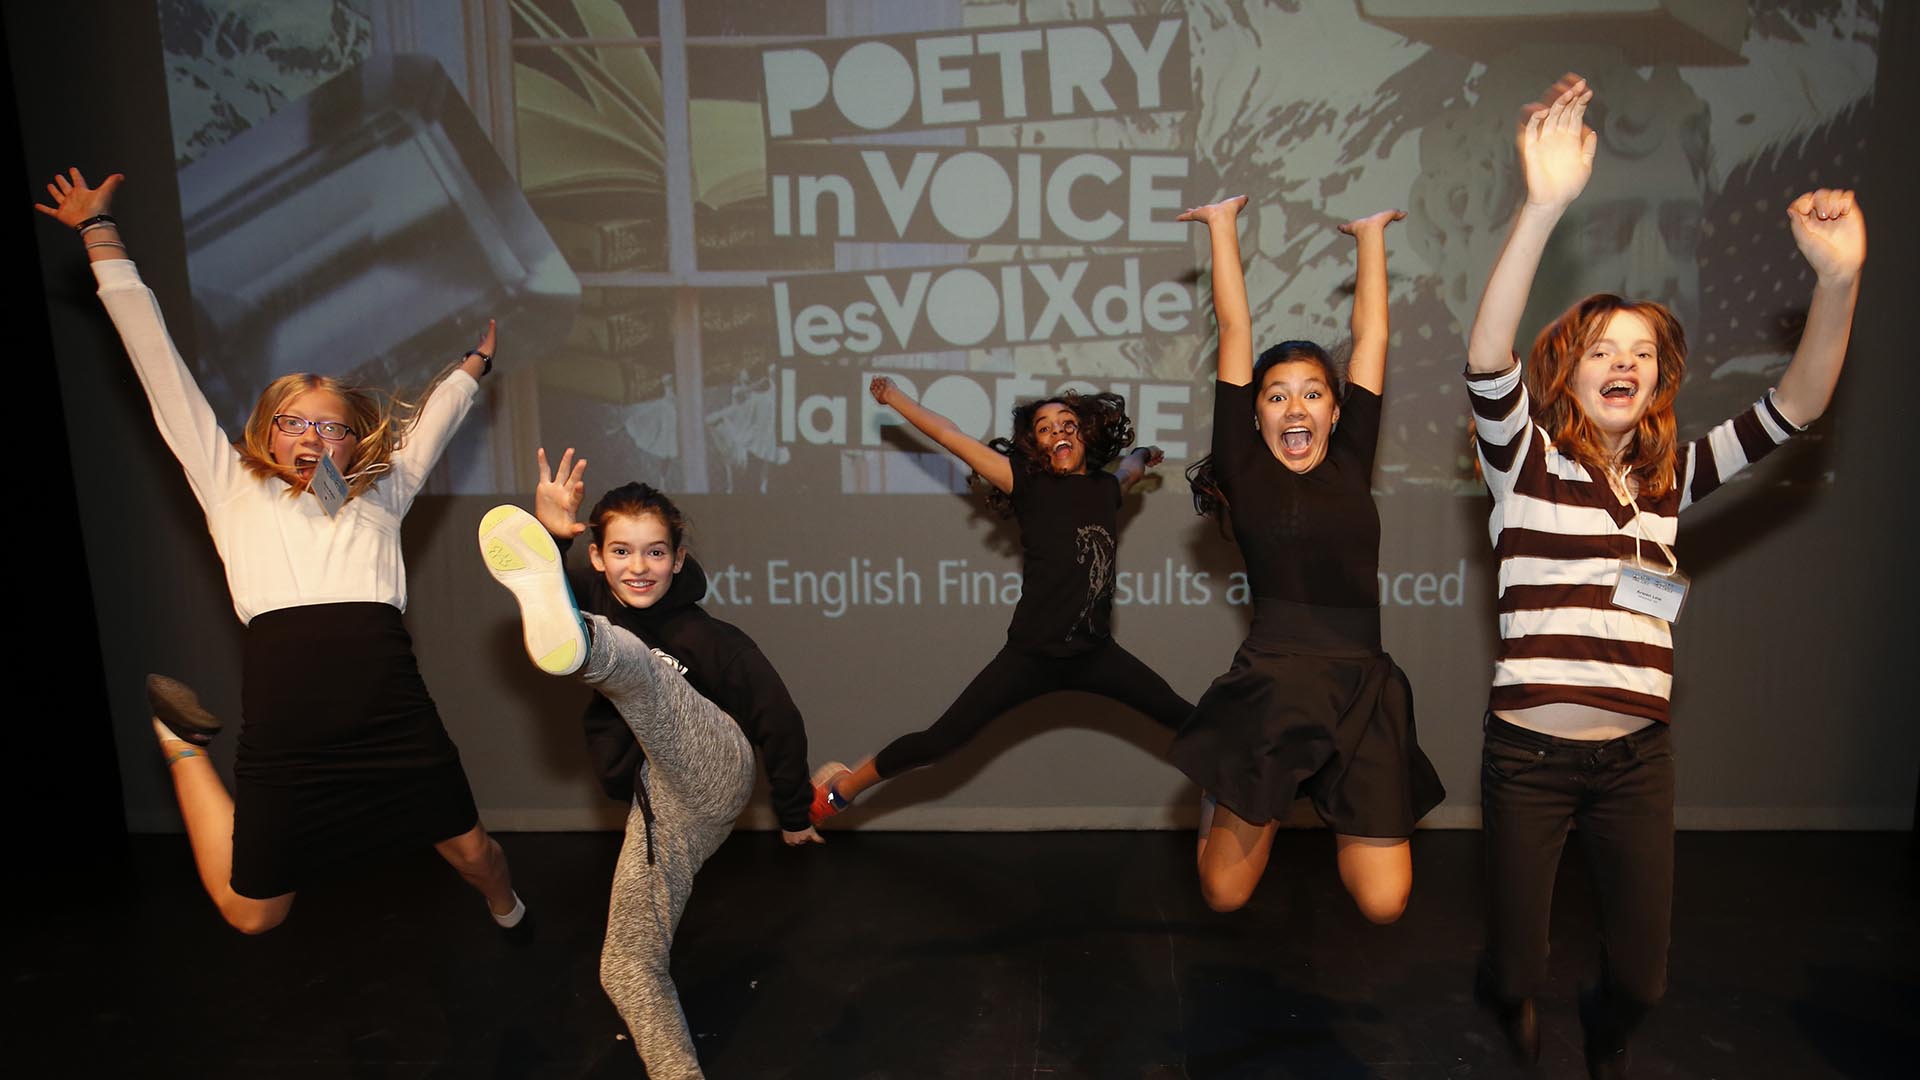 Au théâtre, nos jeunes bénévoles célèbrent la fin d'une semaine fantastique. Qui sait si elles ne sont pas les futures gagnantes des Voix de la poésie !